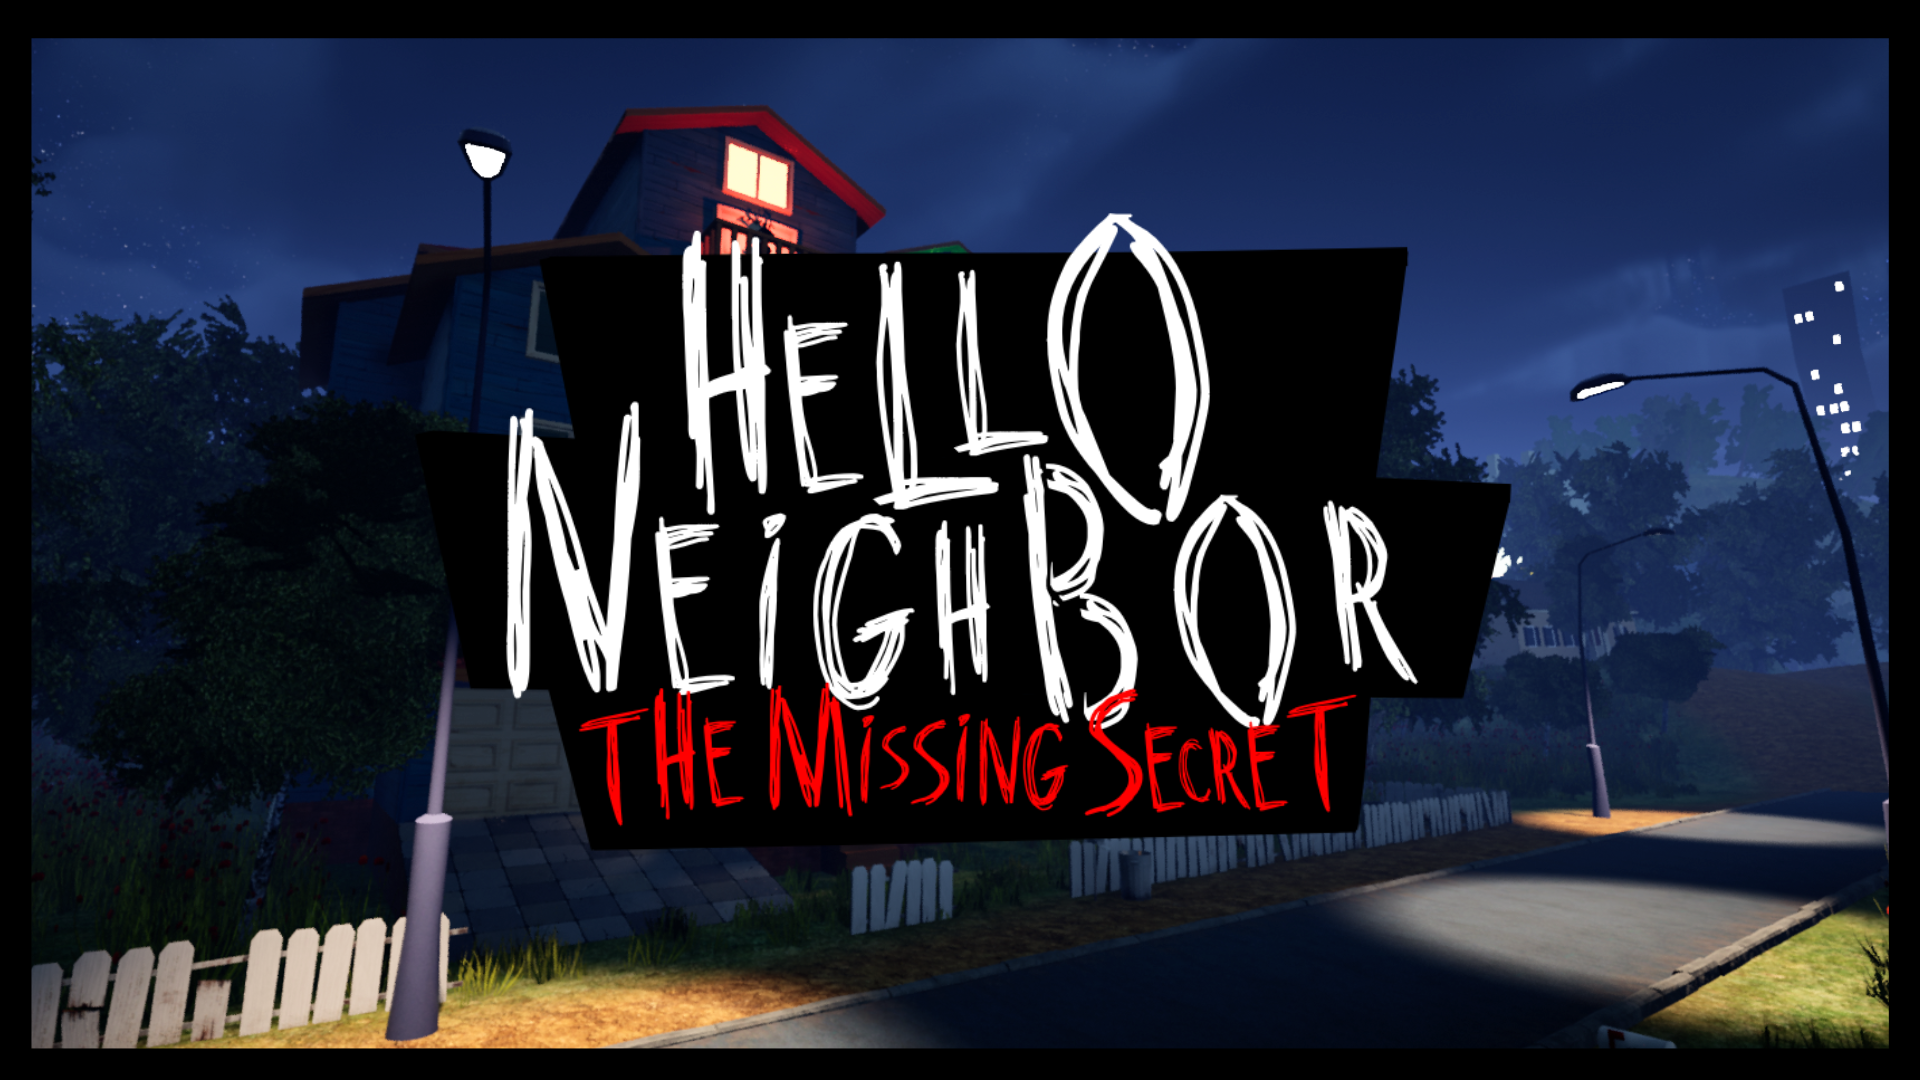 Secret Neighbor - Open Beta  Secret, Hello neighbor, Author